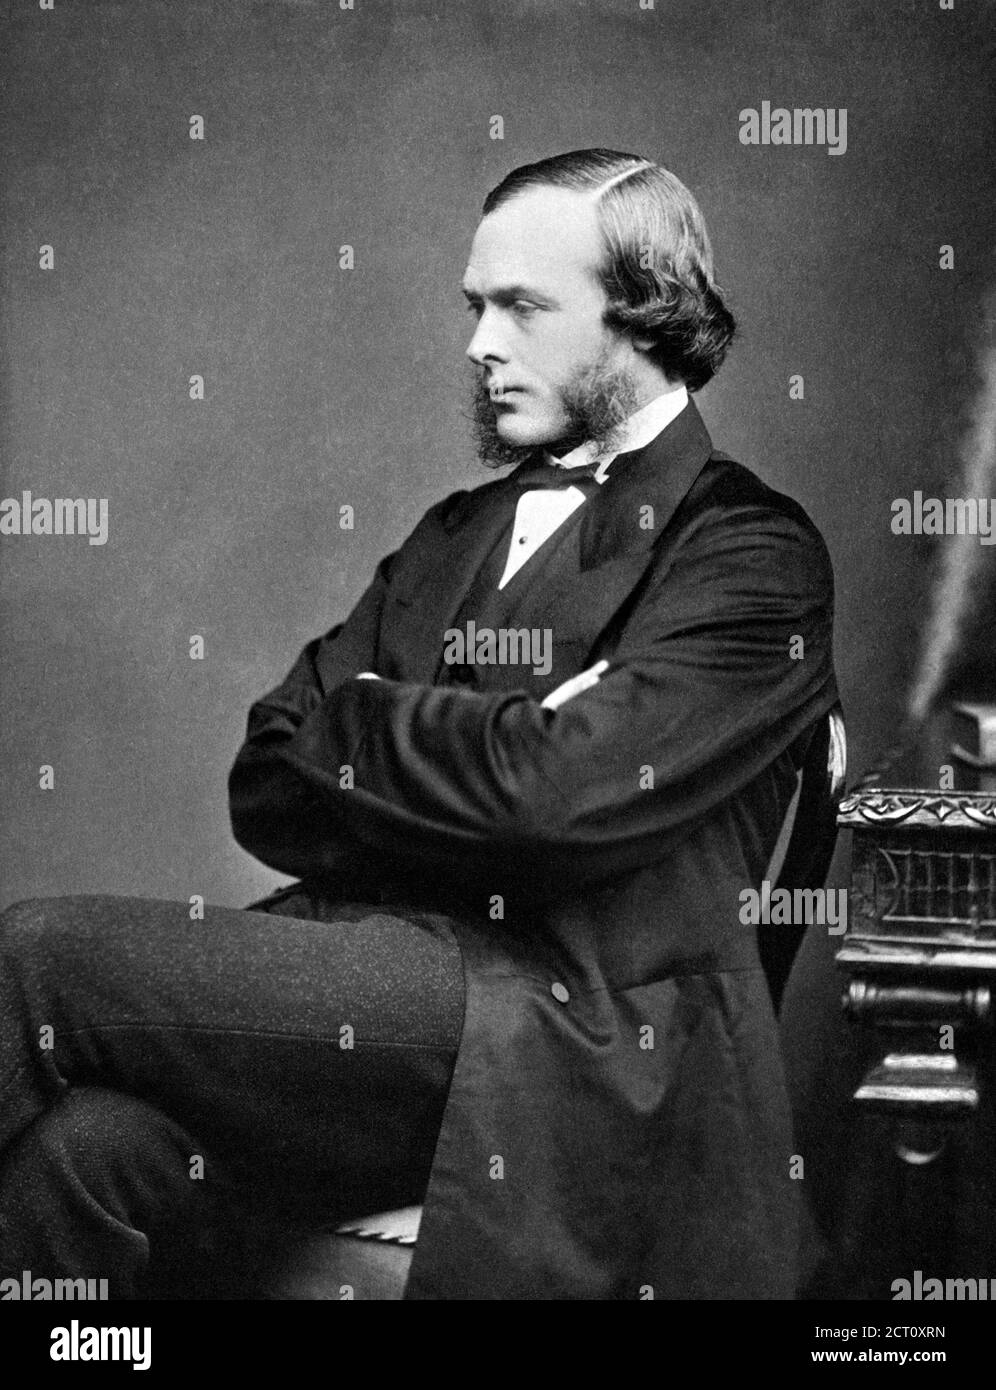 Joseph Lister. Porträt des britischen Chirurgen Joseph Lister, 1. Baron Lister (1827-1912), Fotografie von Thomas Annan, um 1860. Lister war ein Pionier der antiseptischen Chirurgie. Stockfoto